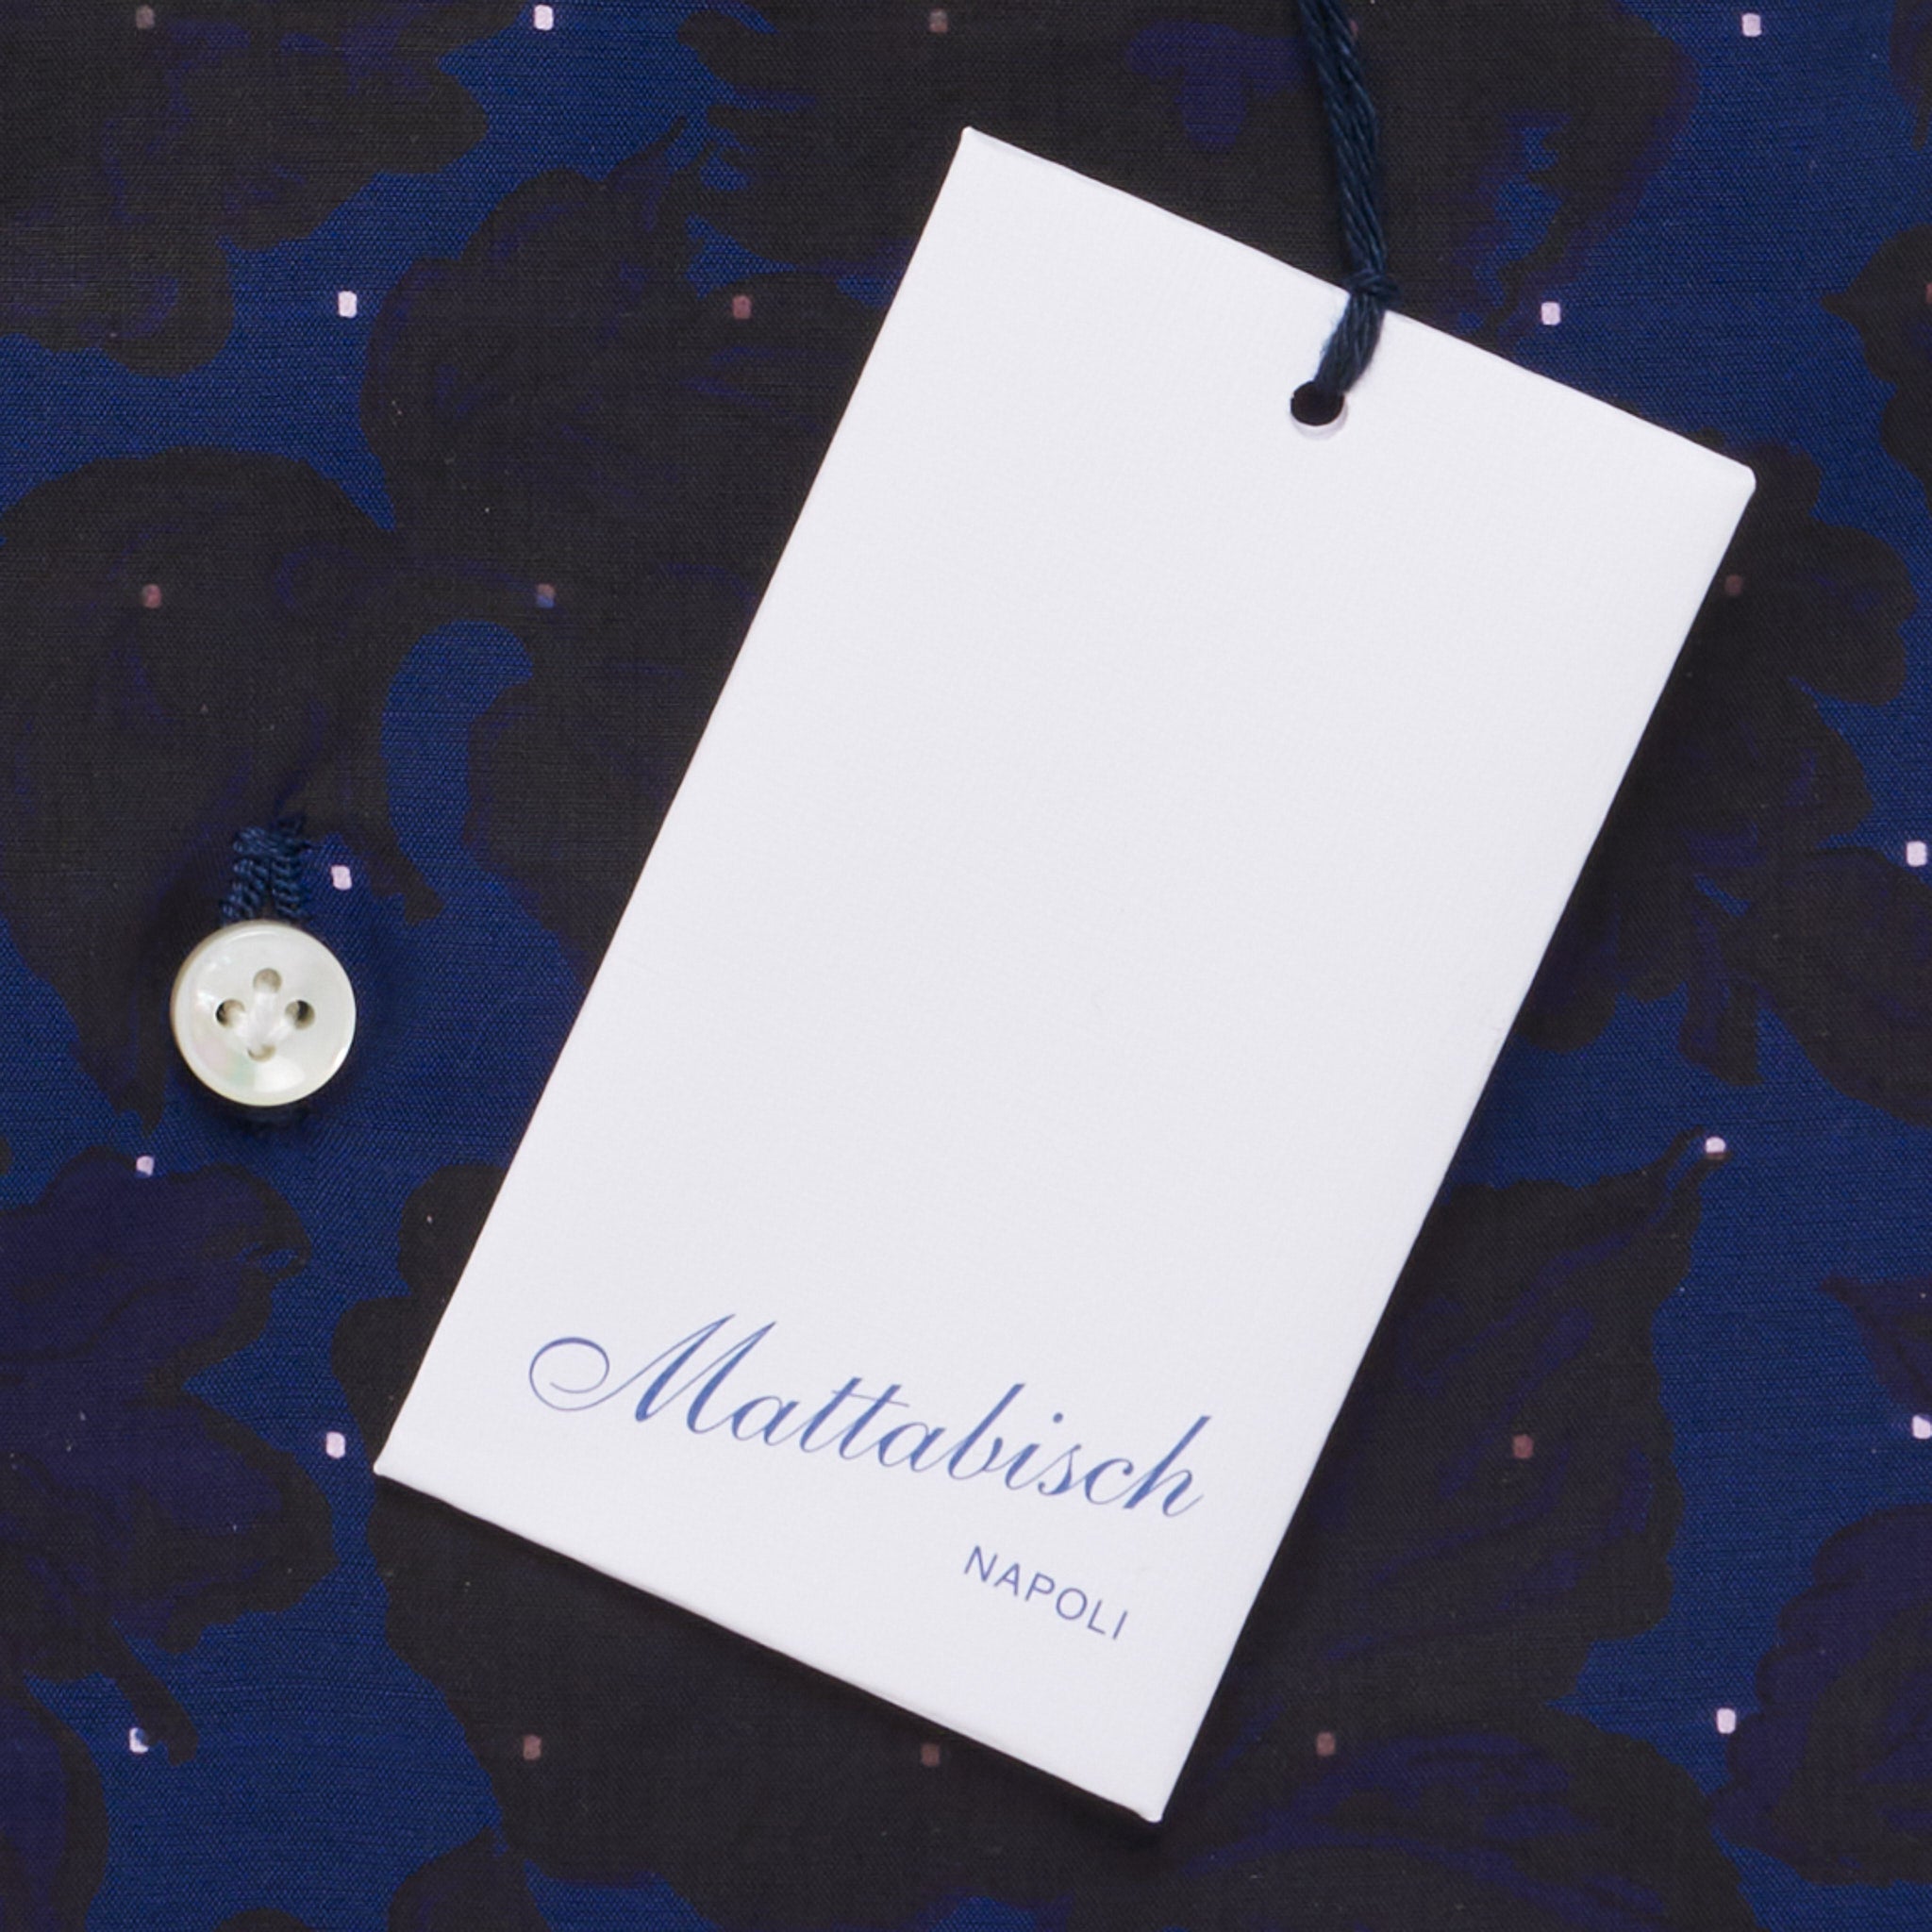 MATTABISCH by Kiton Handmade Navy Blue Floral Jacquard Dot Dress Shirt NEW MATTABISCH